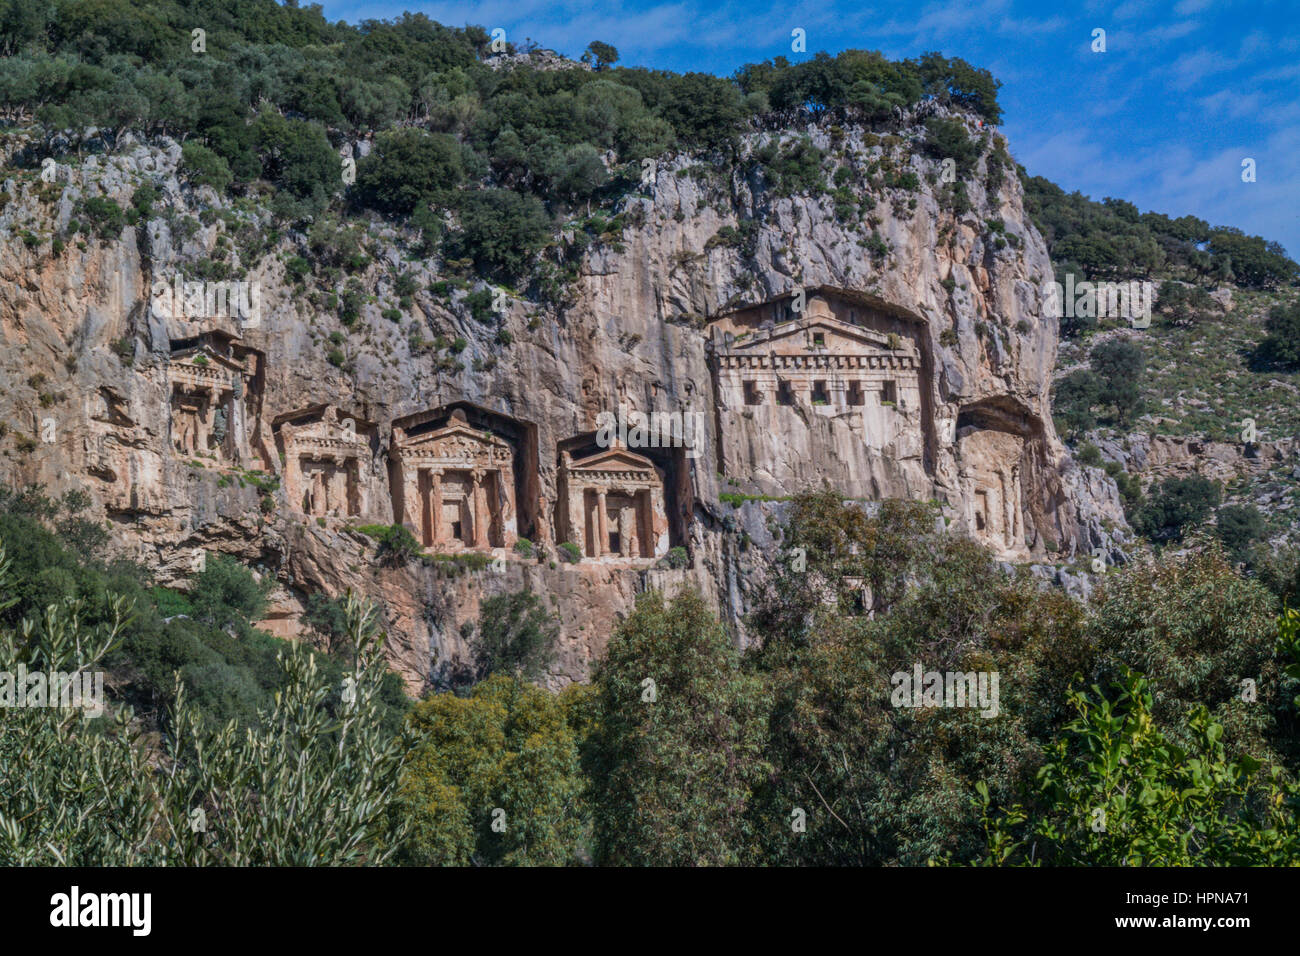 Tombes monumentales sculptées dans la roche à Dalyan Dalyan, Turquie ville mezarlari kaya, tombeaux du roi sculptée dans les rochers, à kayalara mezarlari oyulmus kral, dalyan Banque D'Images